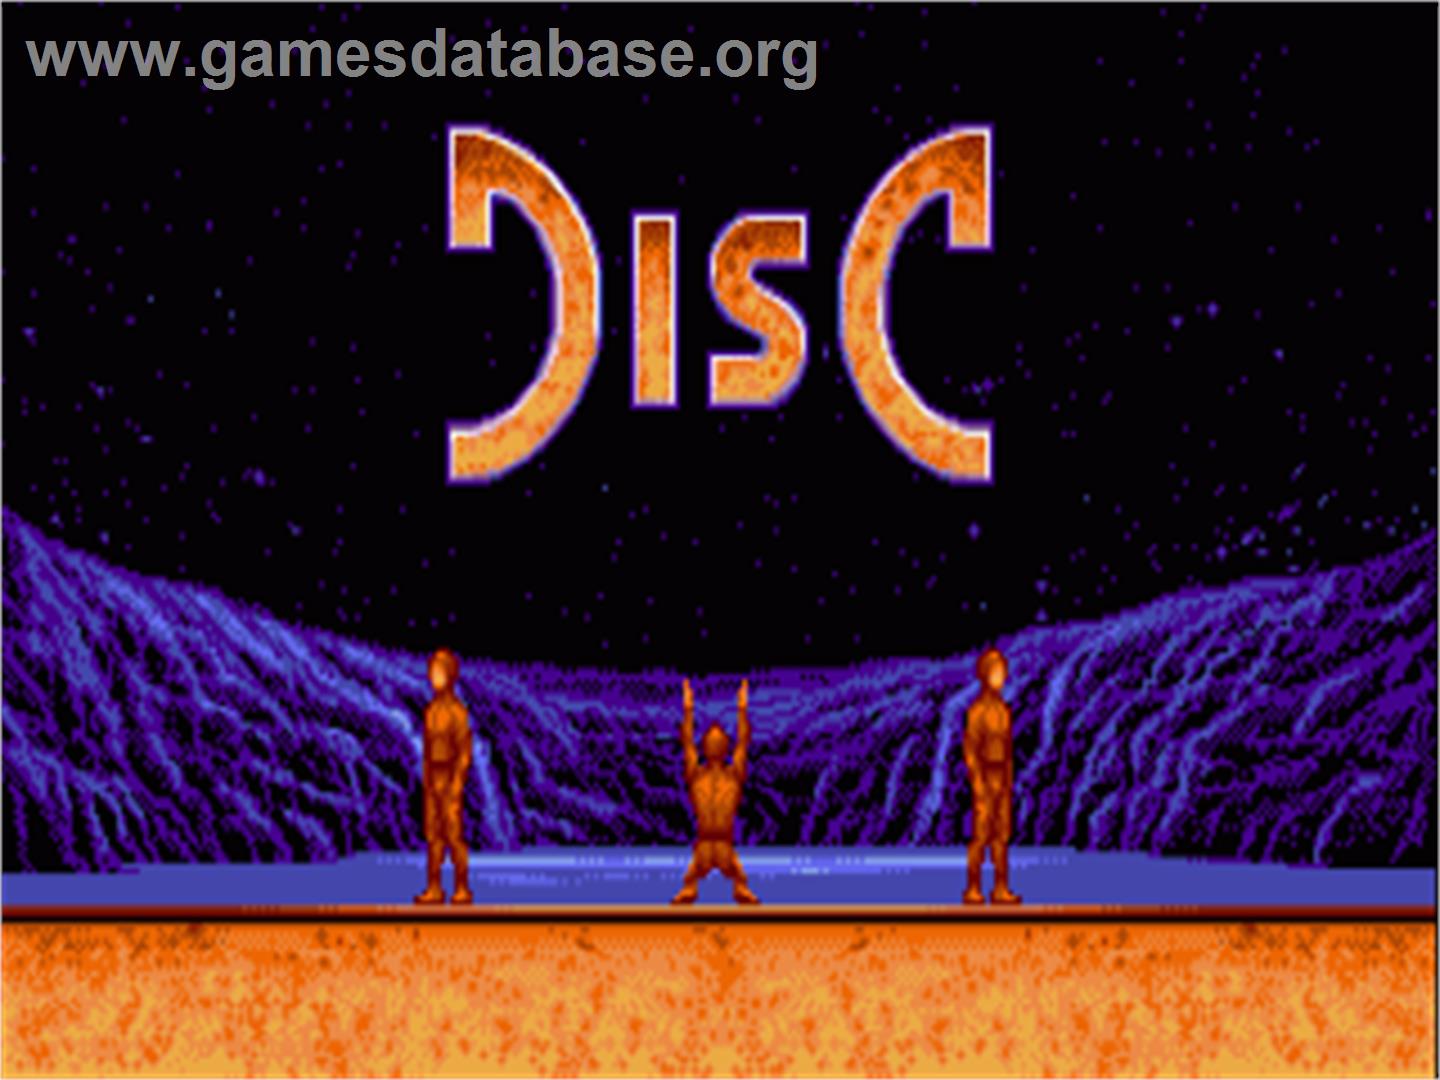 Disc - Commodore Amiga - Artwork - Title Screen